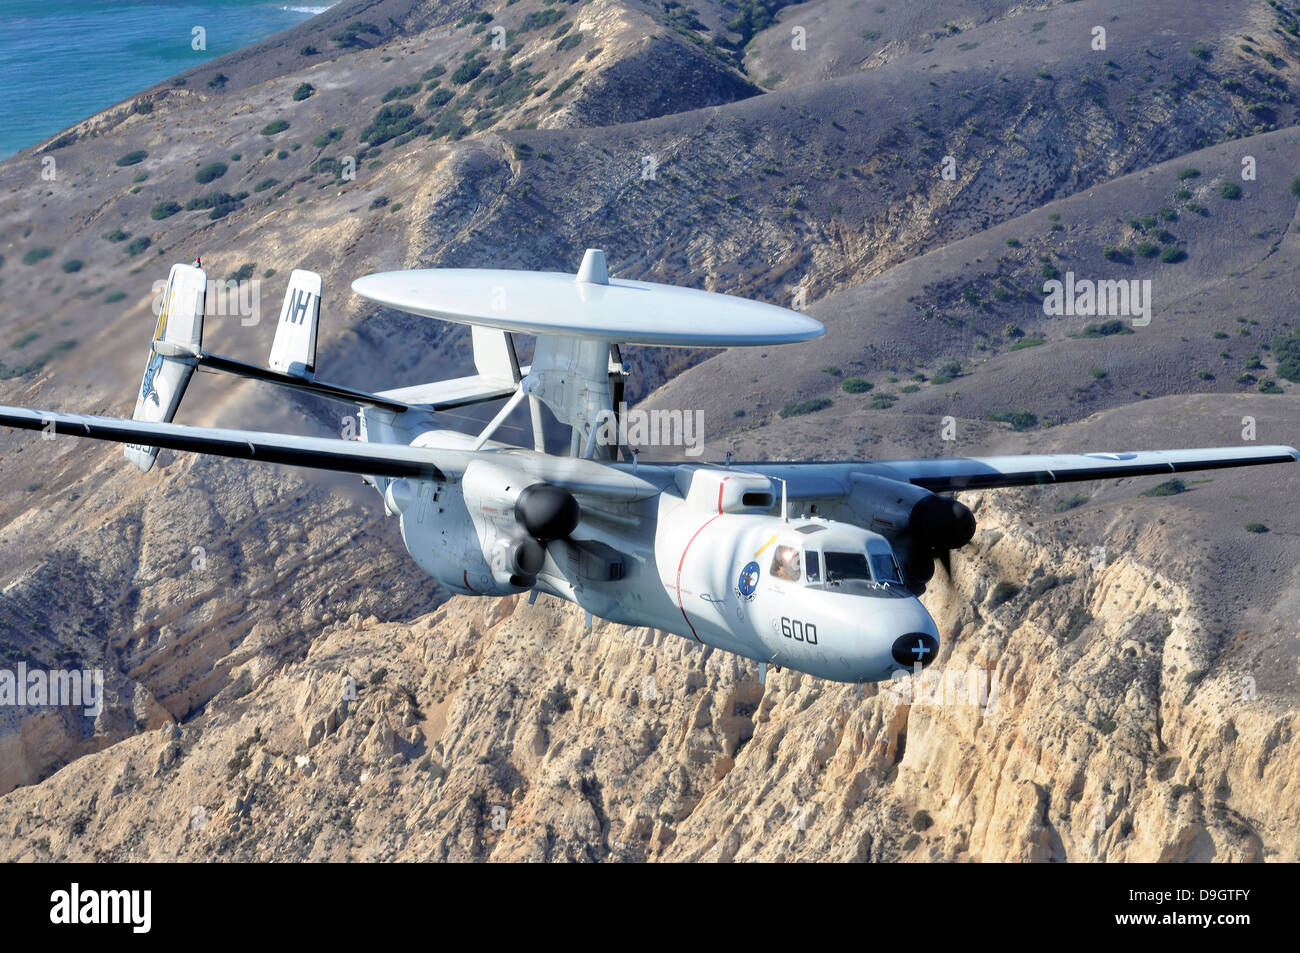 November 20, 2012 - An E-2C Hawkeye aircraft flies over the Pacific Ocean near Ventura, California. Stock Photo